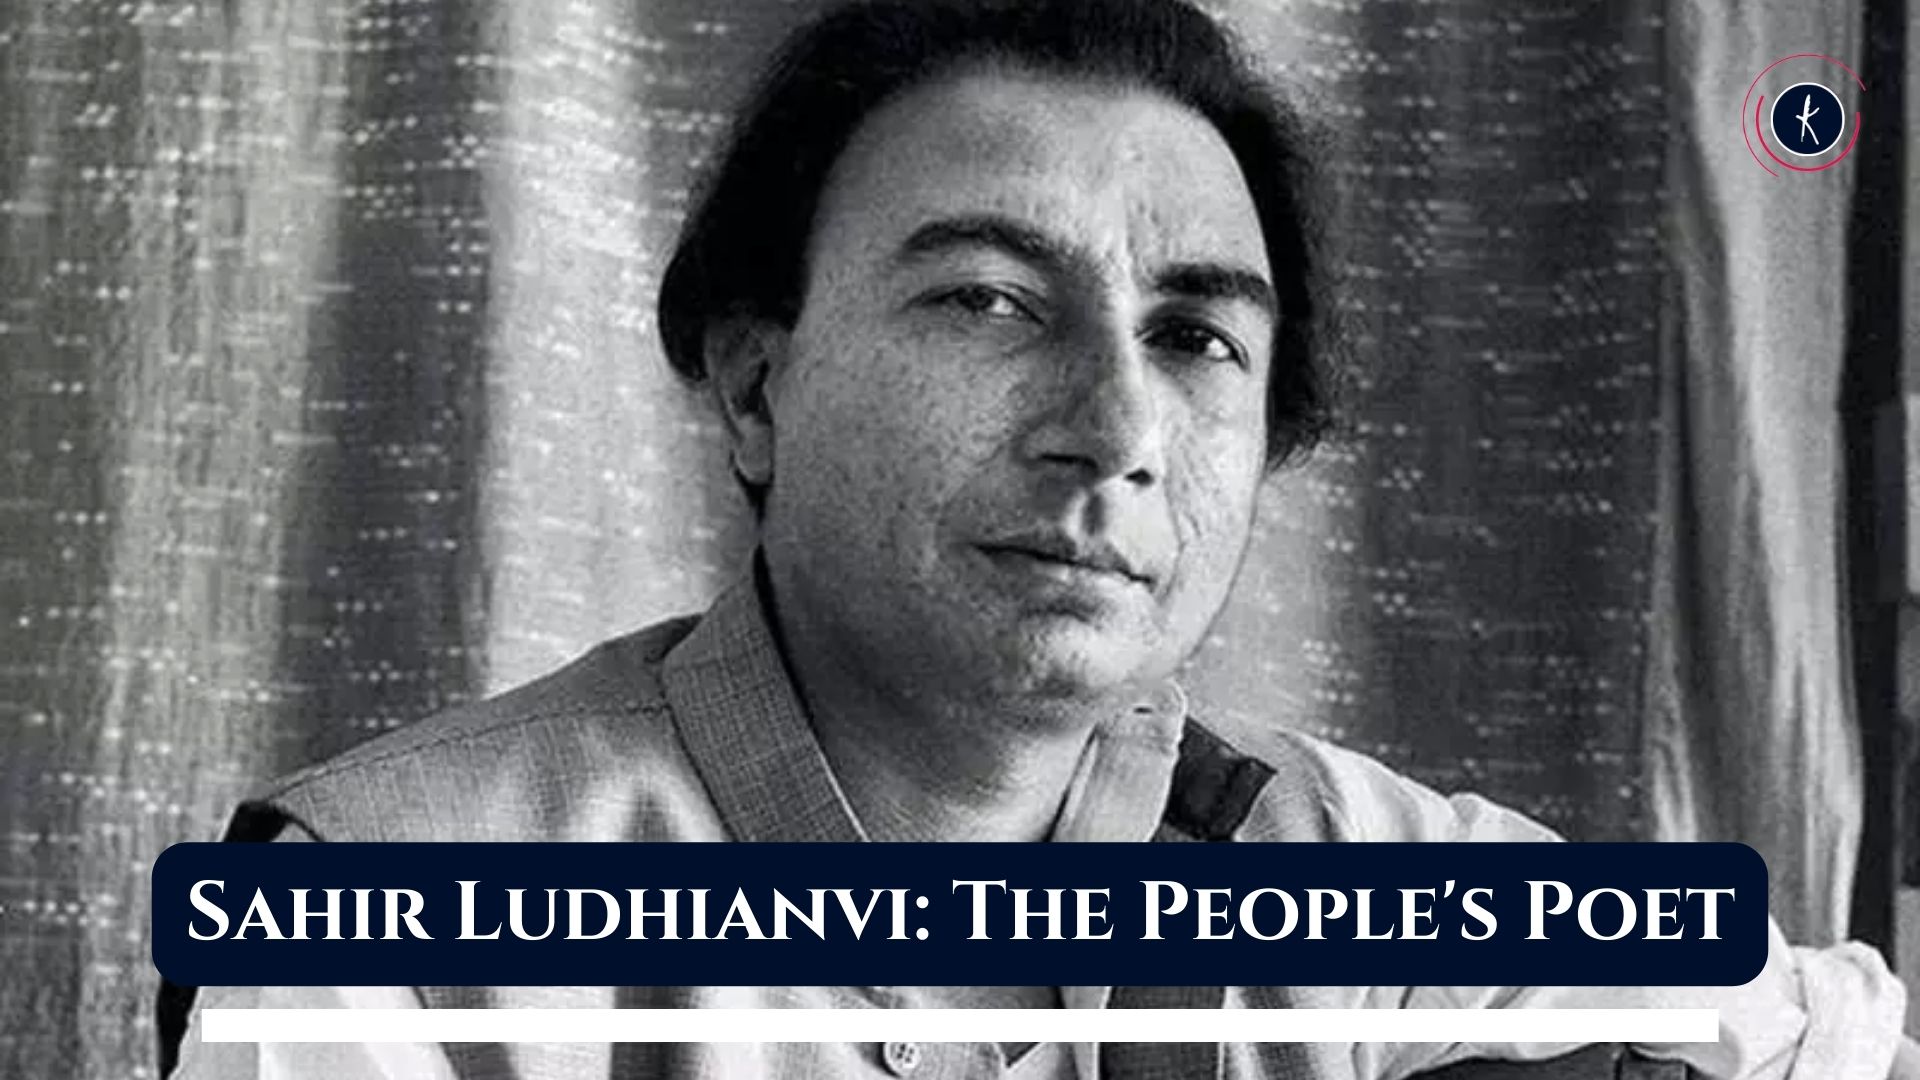 Sahir Ludhianvi: The People's Poet's image